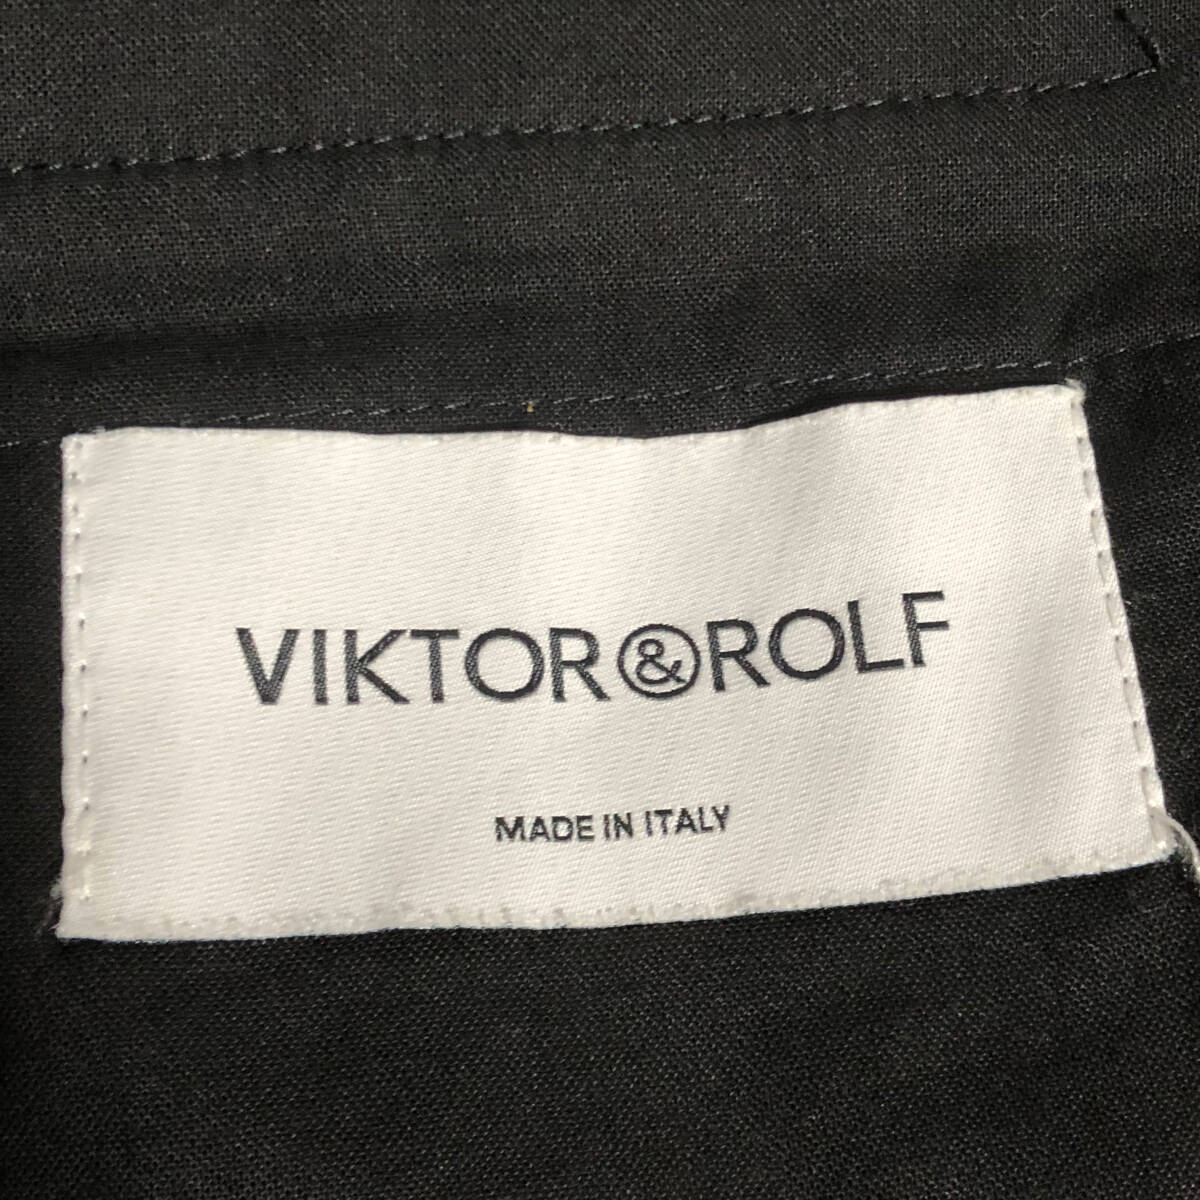 VIKTOR&ROLF Victor & Rolf шорты шорты слаксы шерсть 42 угольно-серый стрейч Италия производства A27